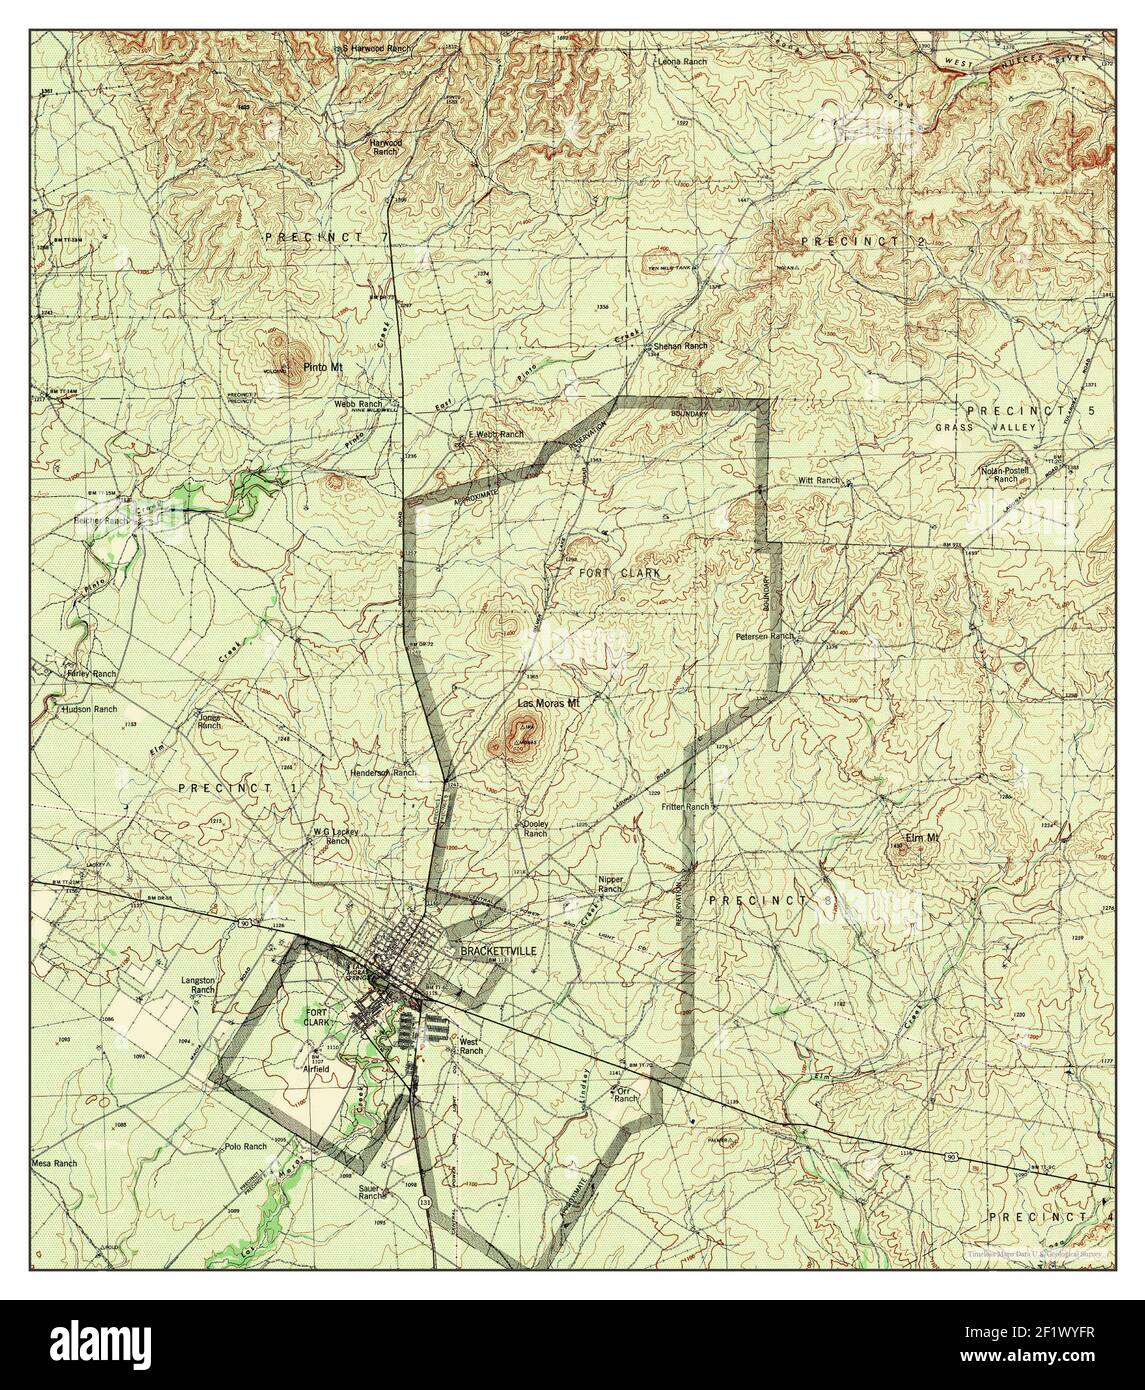 Brackettville, Texas, carte 1944, 1:62500, États-Unis d'Amérique par Timeless Maps, données U.S. Geological Survey Banque D'Images